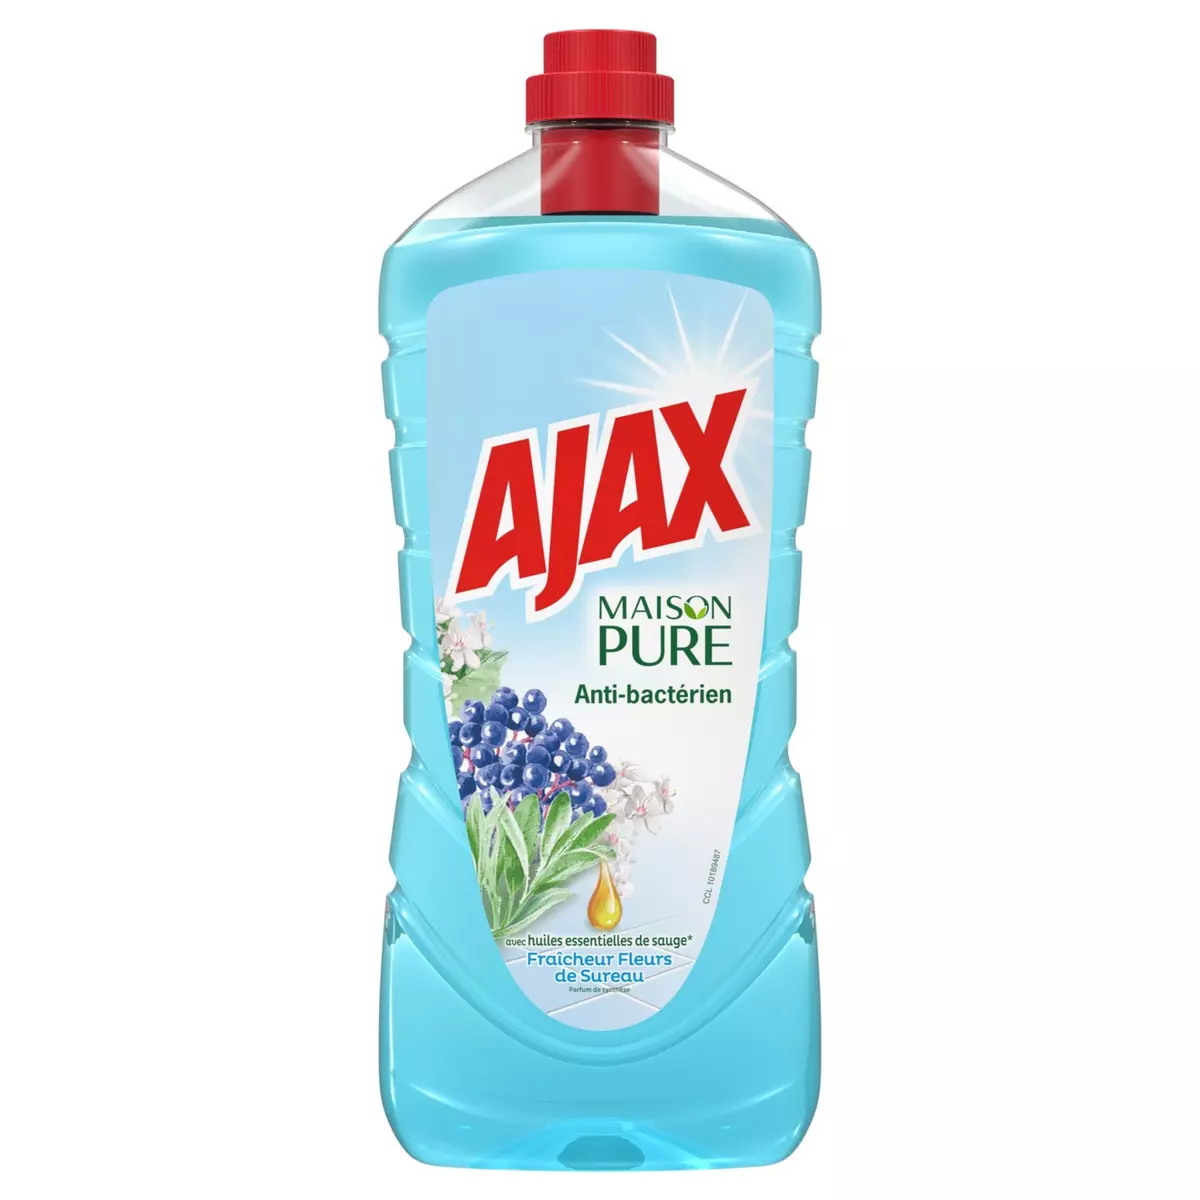 AJAX Maison Pure Nettoyant antibactérien parfum fleur de sureau 1,25l